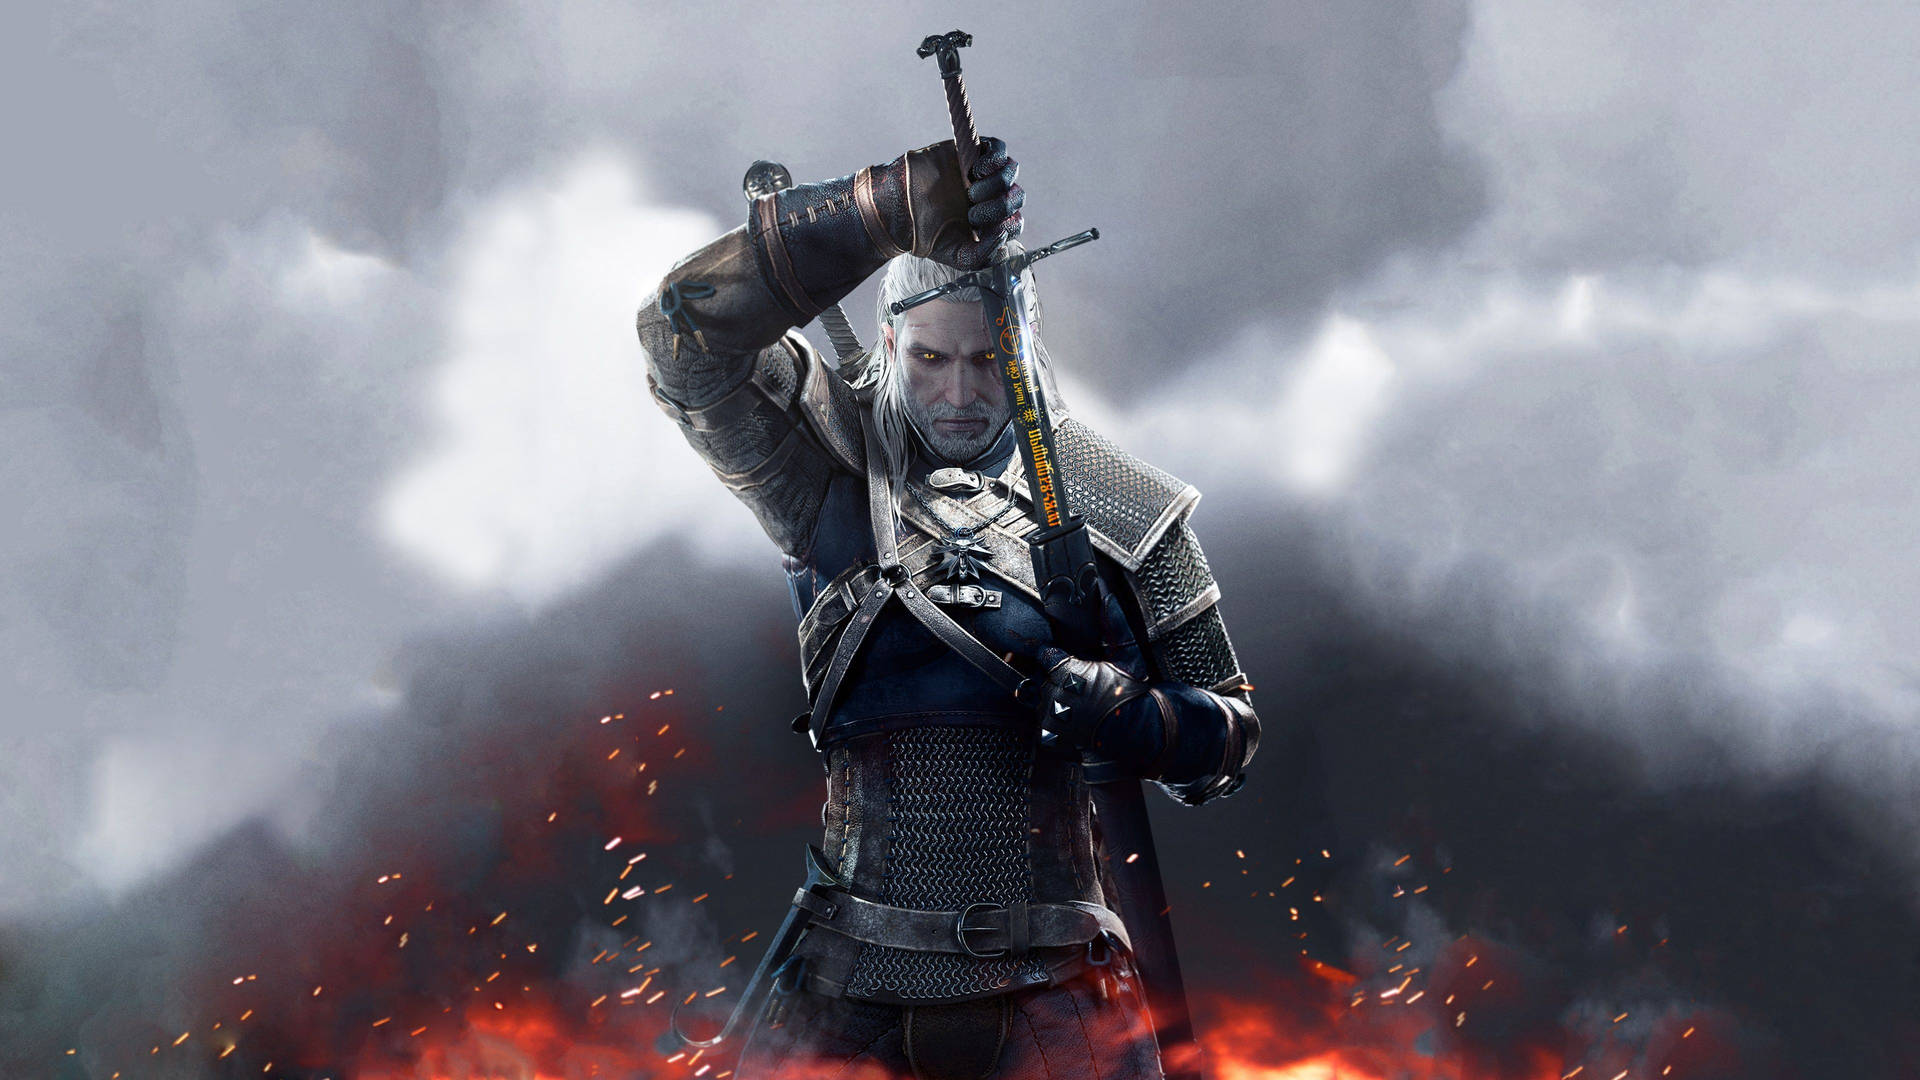 Witcher 3 Geralt In 4k